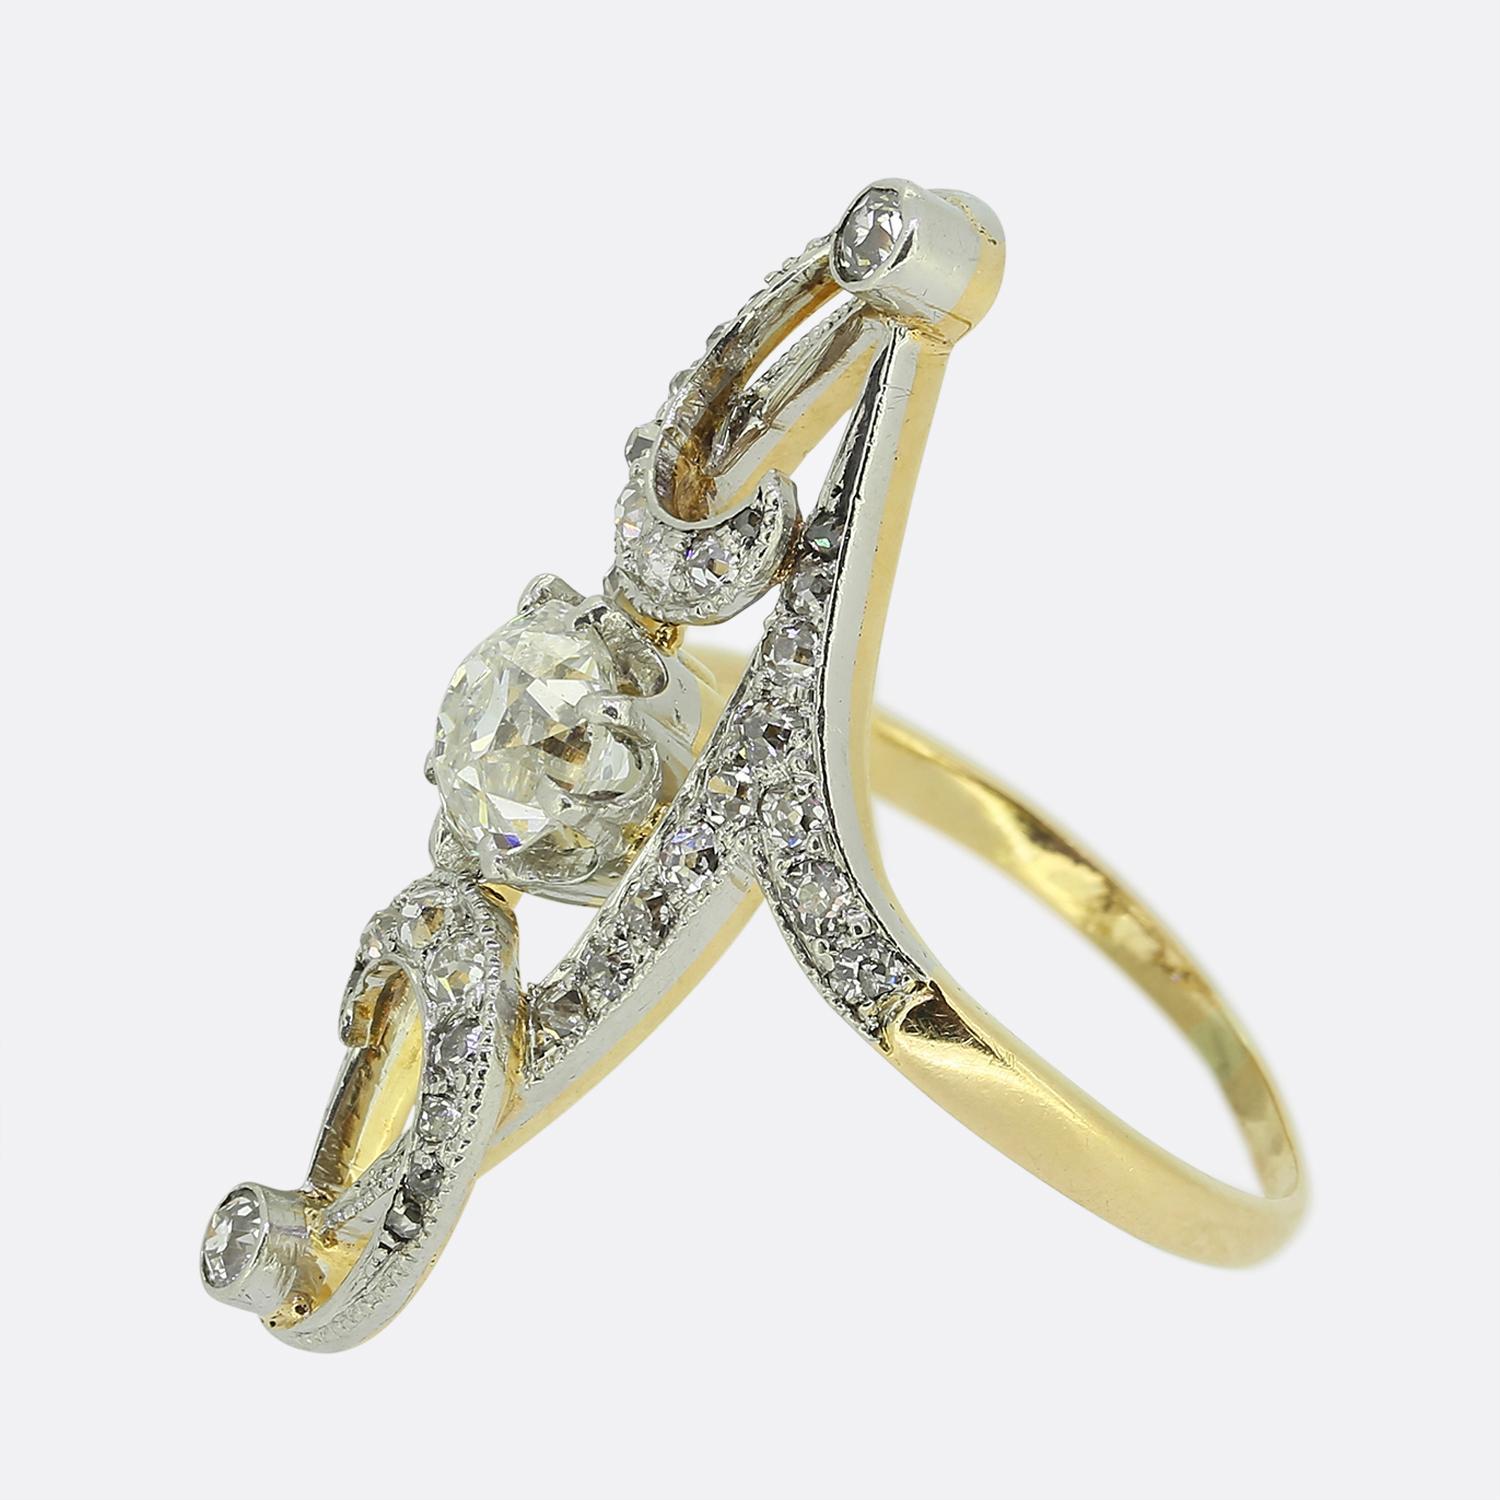 Hier haben wir einen charmanten Navette-Ring aus der Edwardianischen Zeit. Dieses elegante Stück zeigt einen einzelnen Diamanten im Minenschliff in der Mitte des Gesichts in einer Fassung mit acht Krallen. Dieser Hauptstein ist von einer